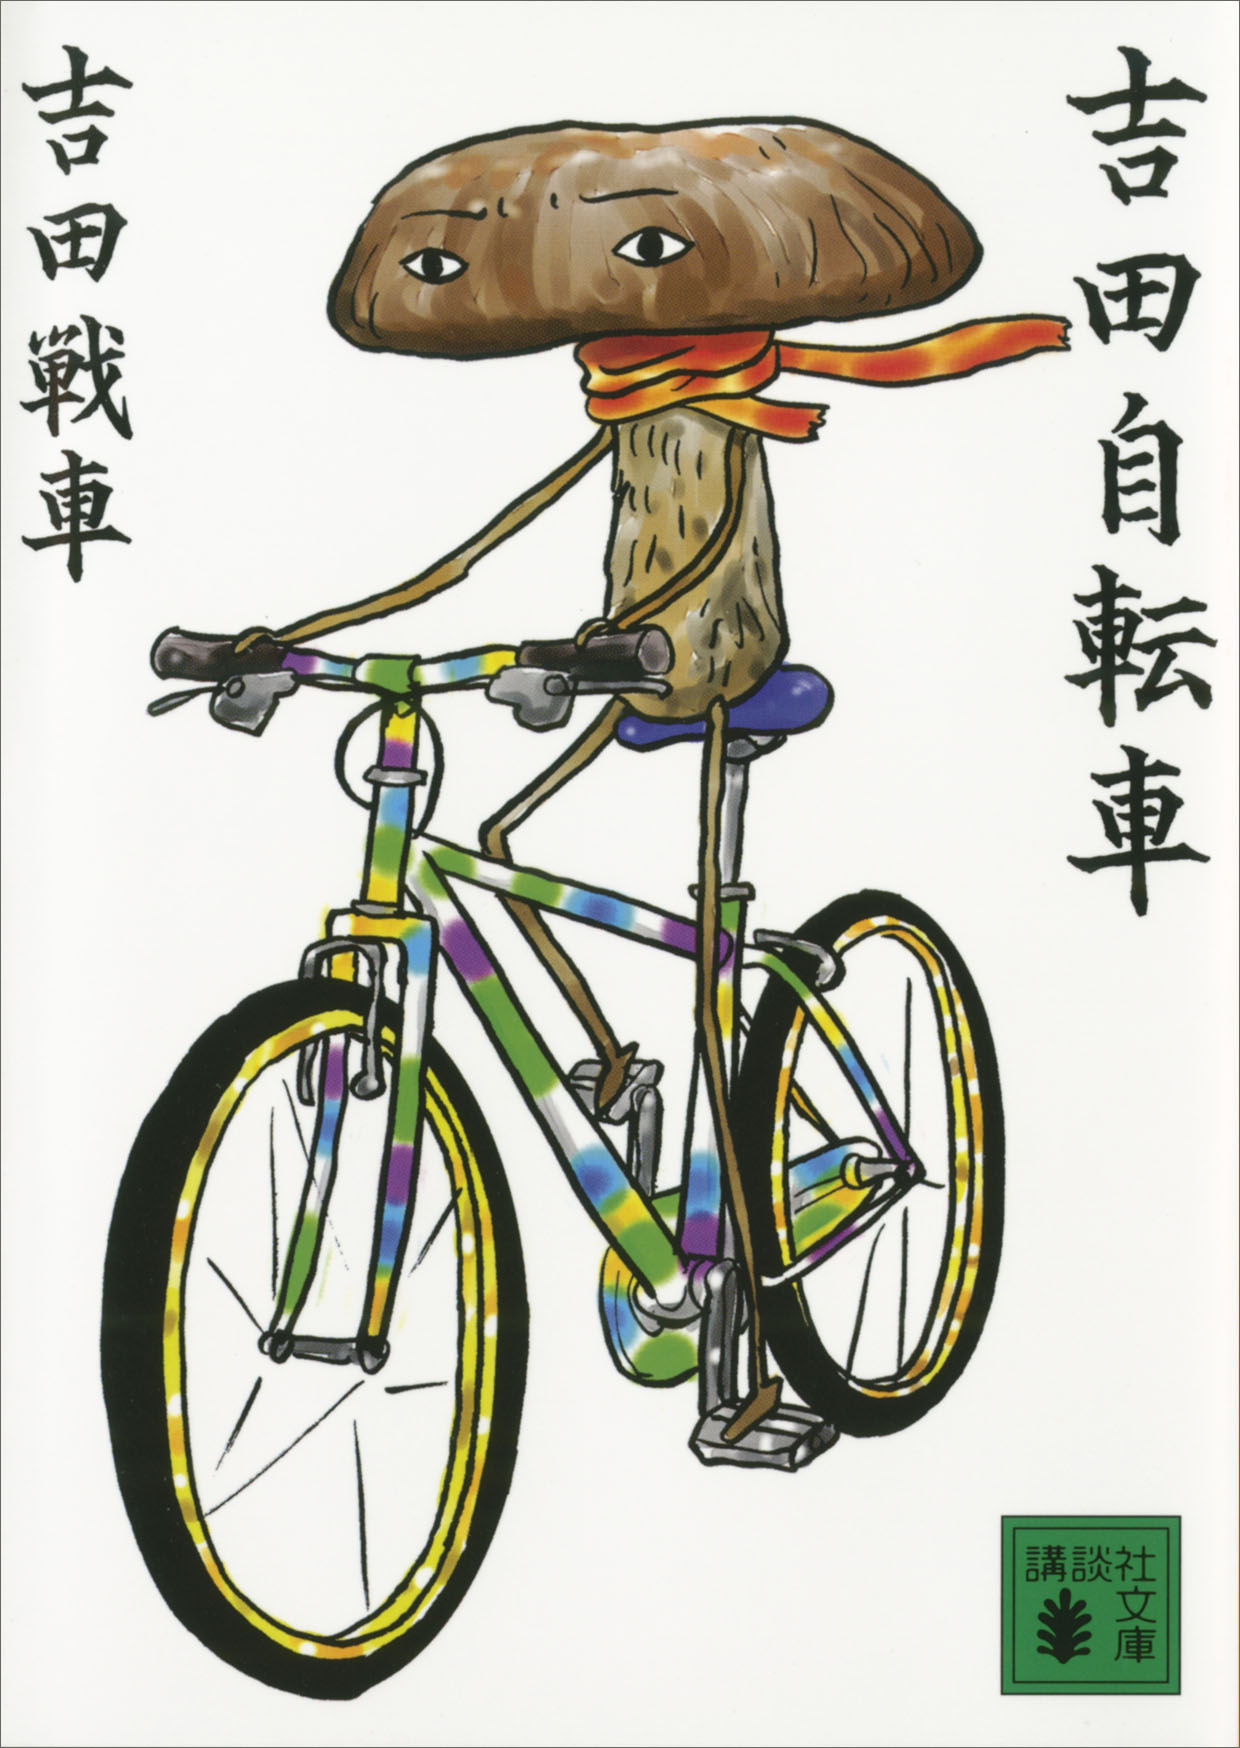 吉田自転車(書籍) - 電子書籍 | U-NEXT 初回600円分無料